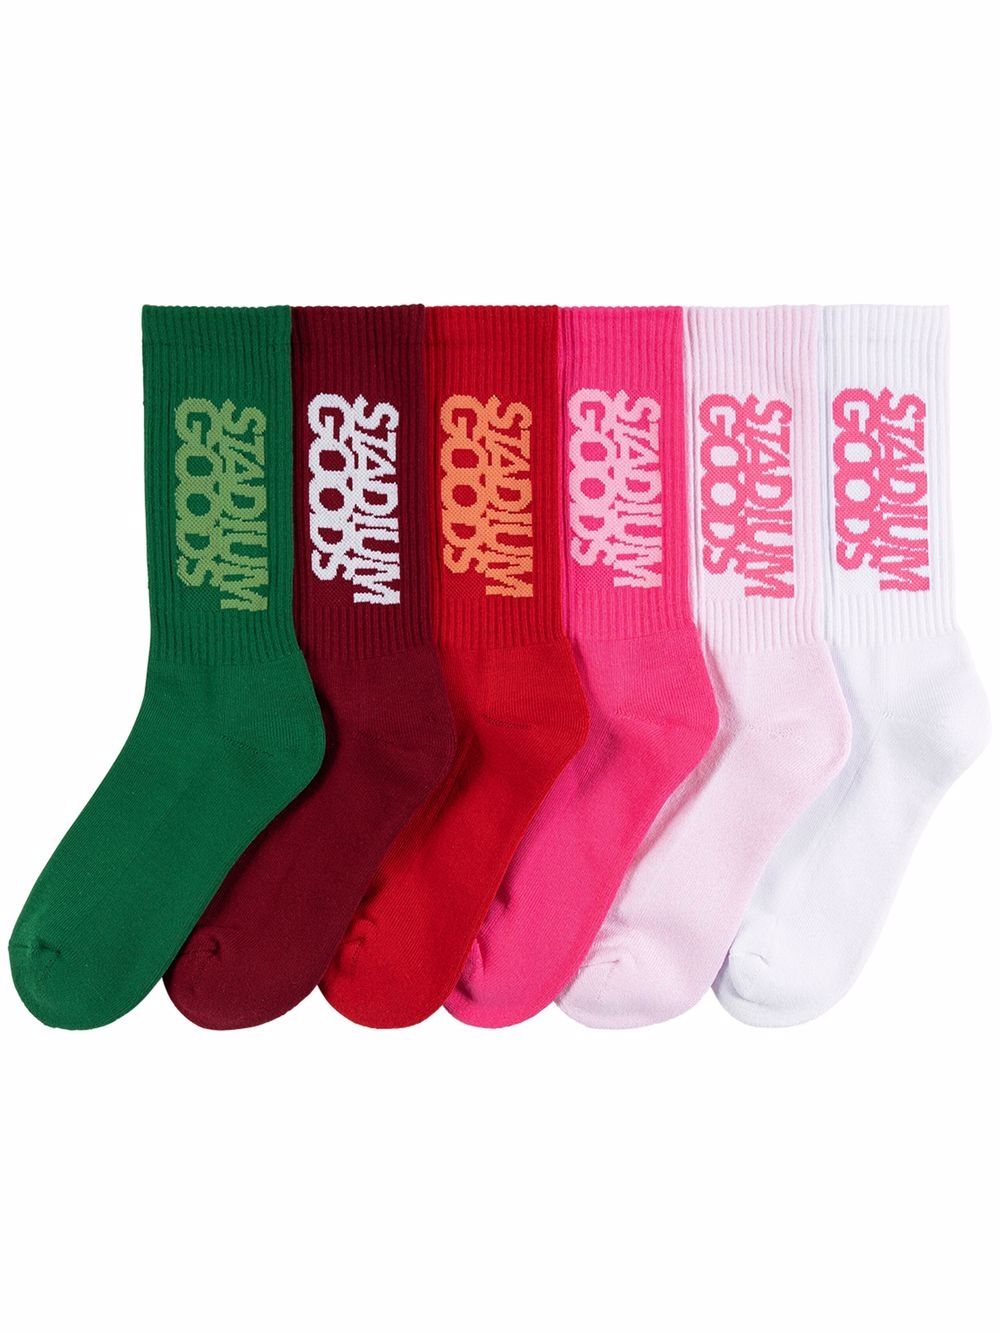 Roses six-pack socks